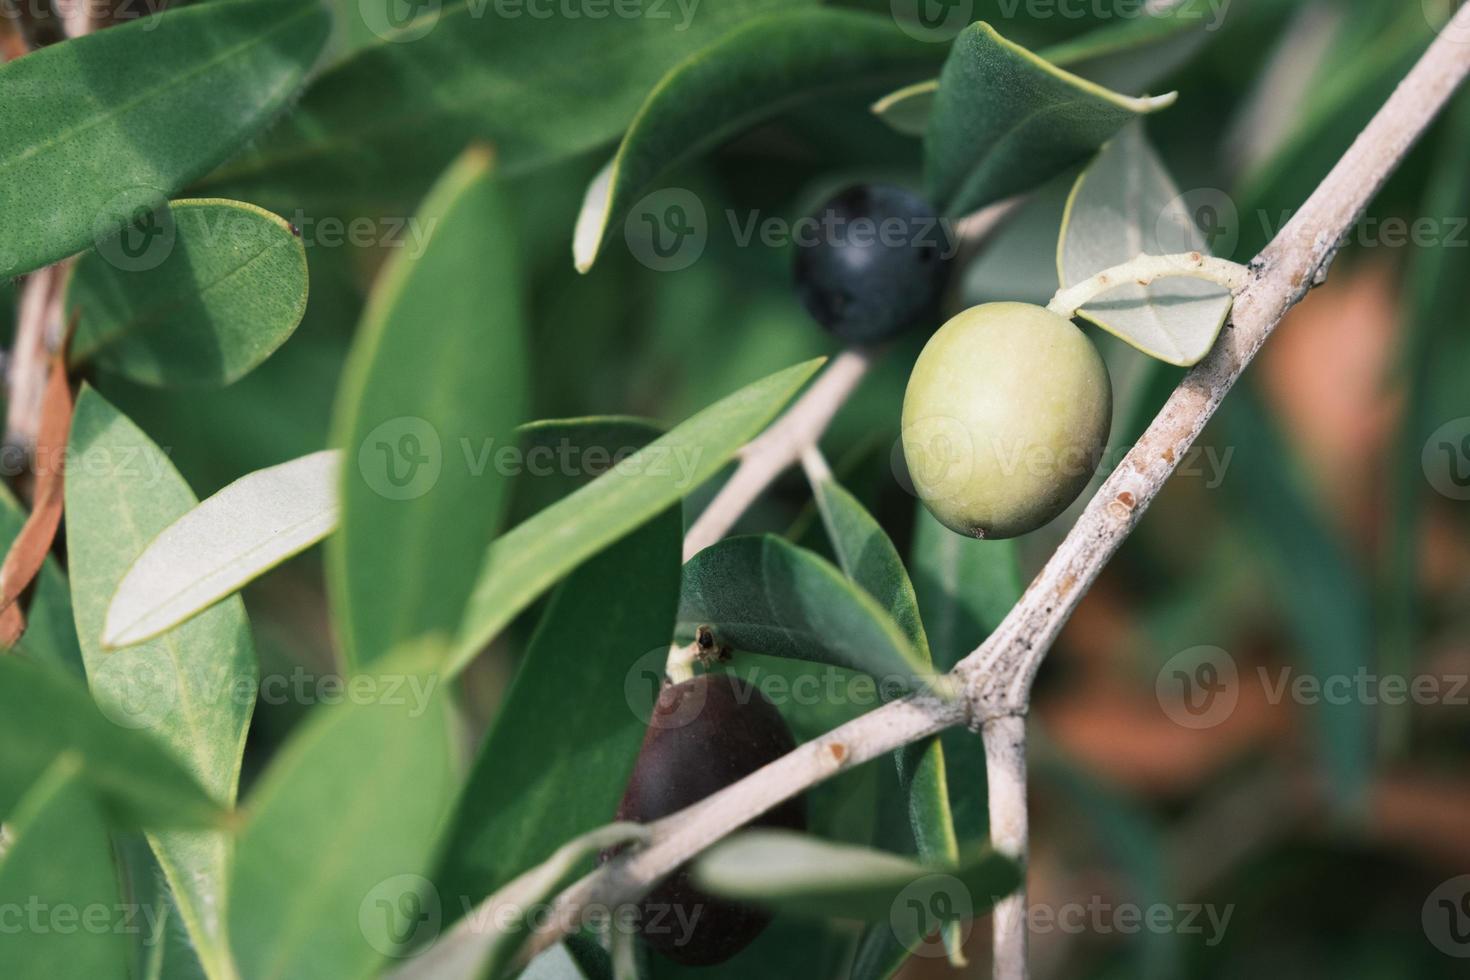 bagas de azeitonas de itália em um galho de árvore com folhas verdes, baga de azeite verde espanha, planta de fruta de azeitonas orgânicas grécia, closeup, plano de fundo. foto